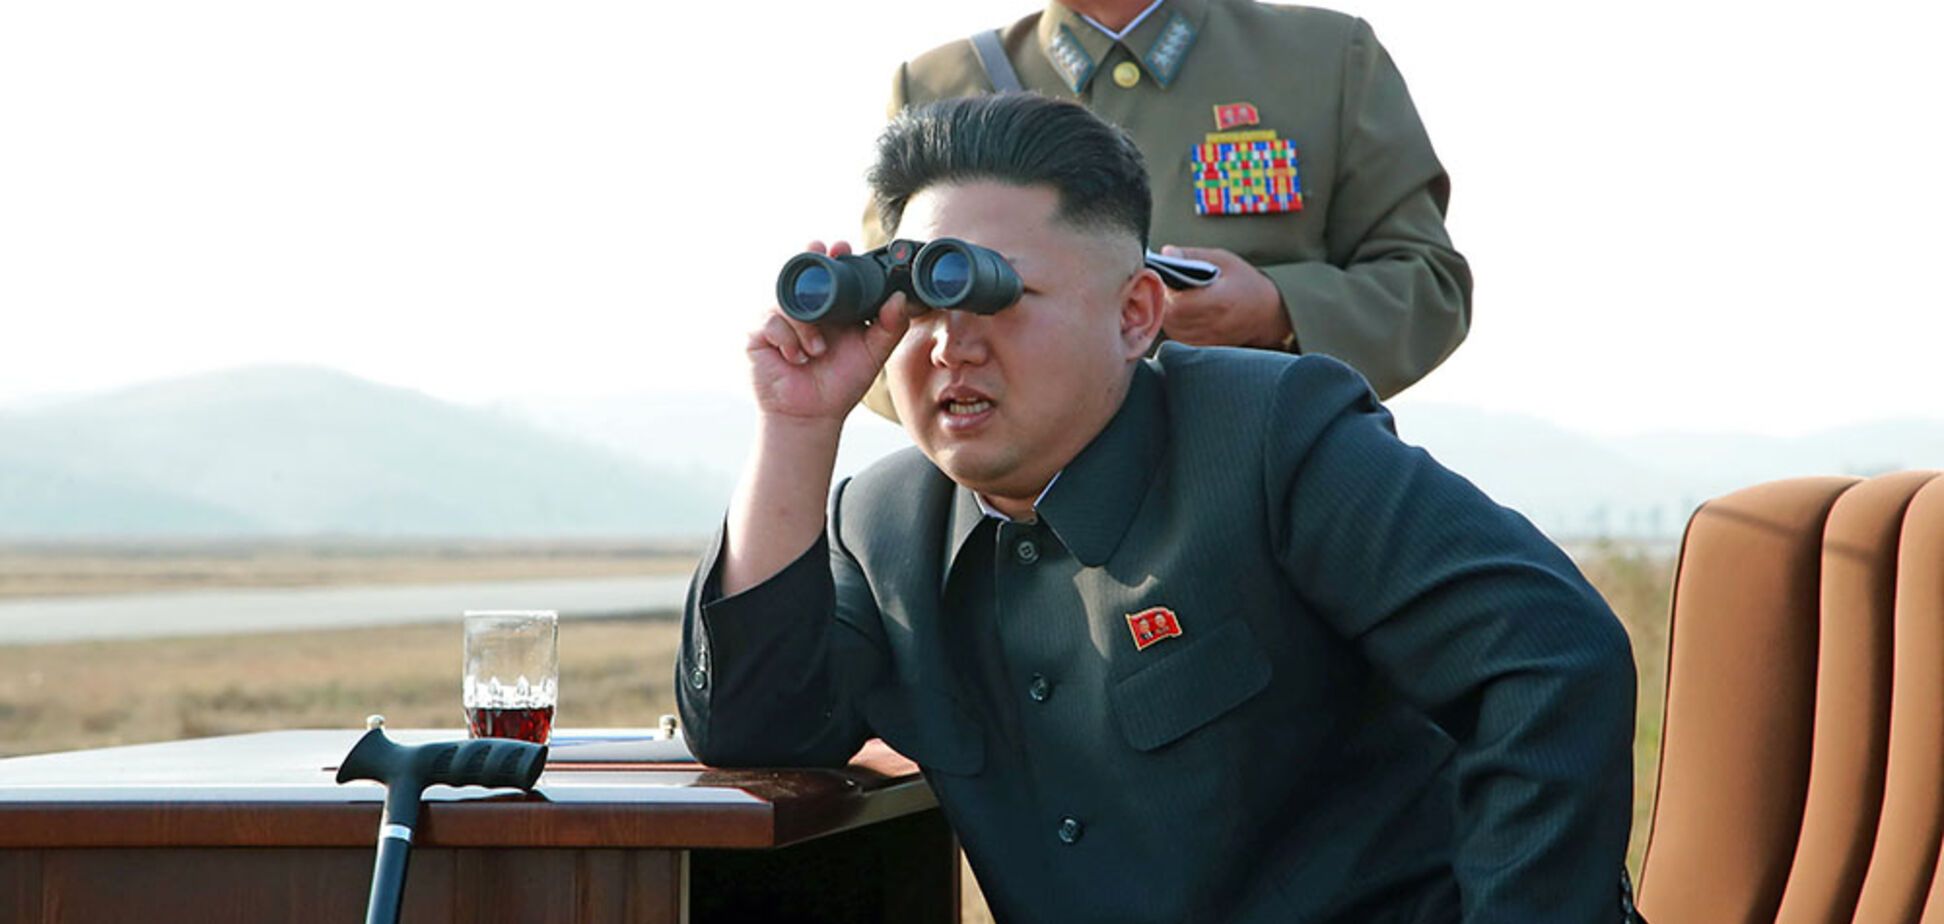 Что Северная Корея может предложить миру?